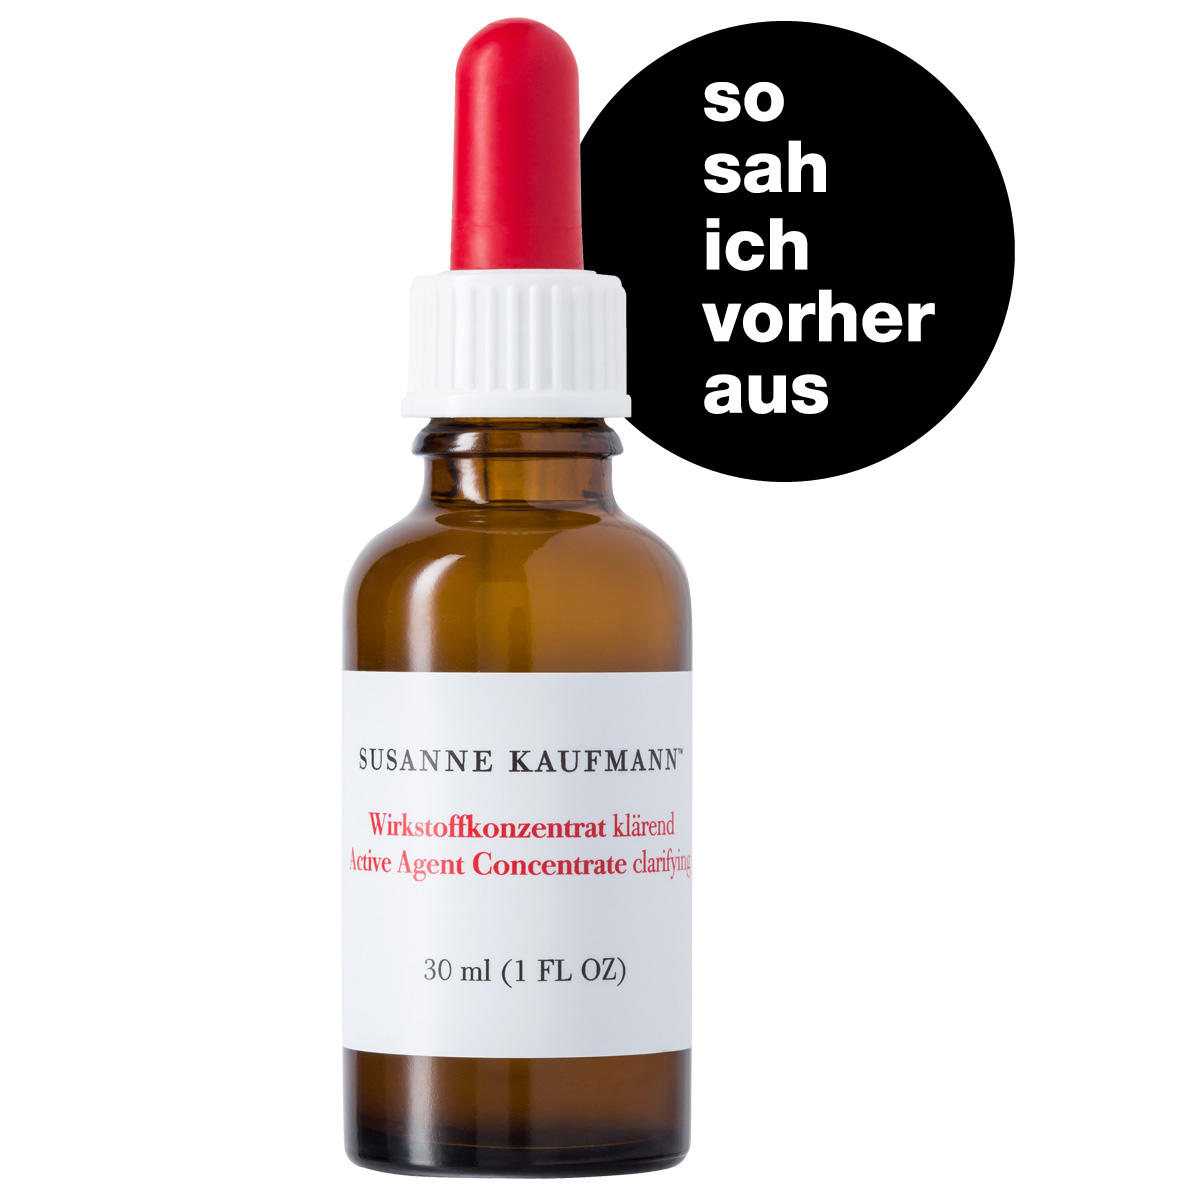 Susanne Kaufmann Ingrediente activo concentrado clarificador 30 ml - 3